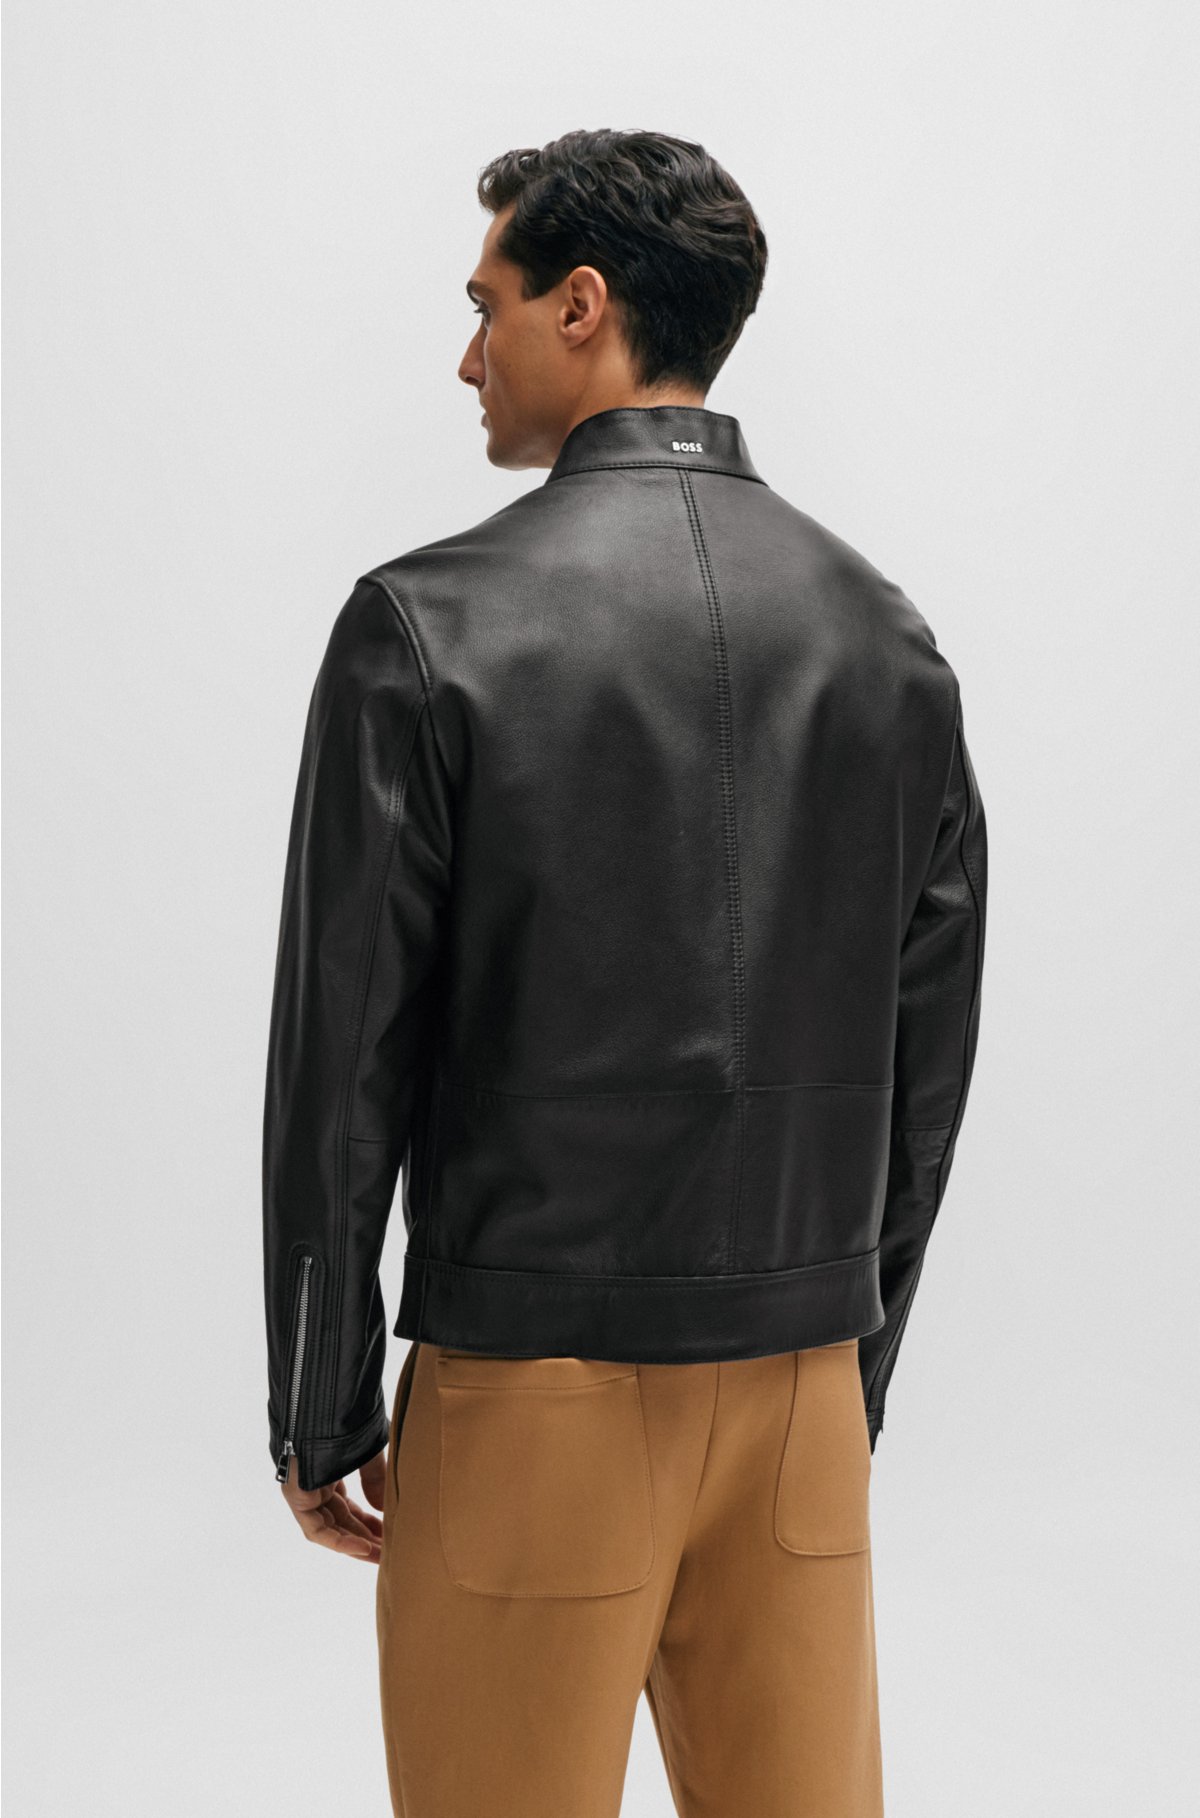 Hugo Boss Leather Jacket - Coats & jackets